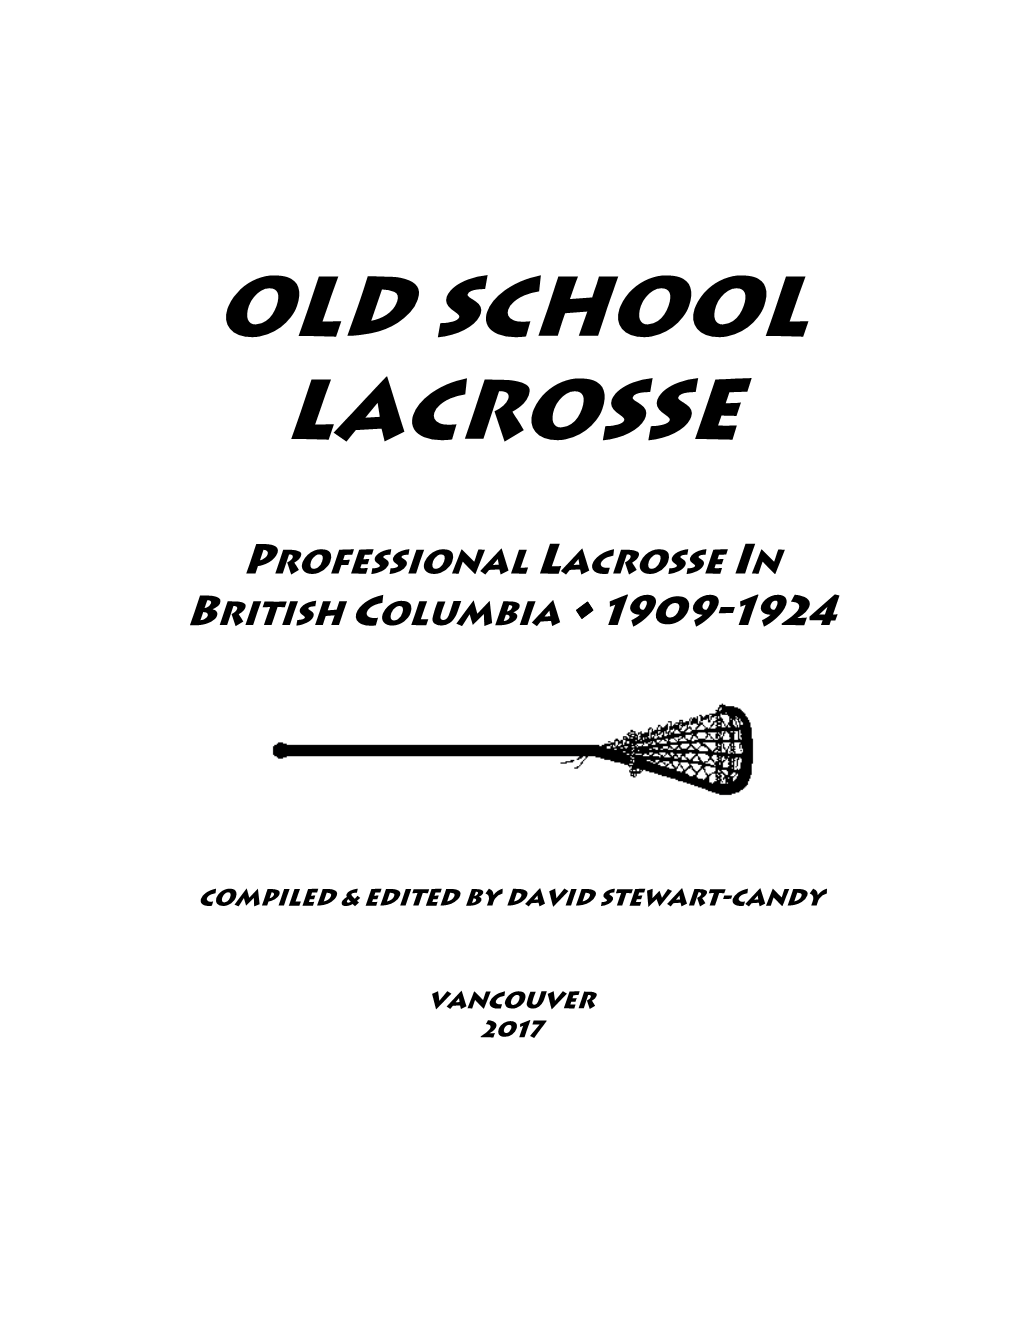 Pro Lacrosse in British Columbia 1909-1924